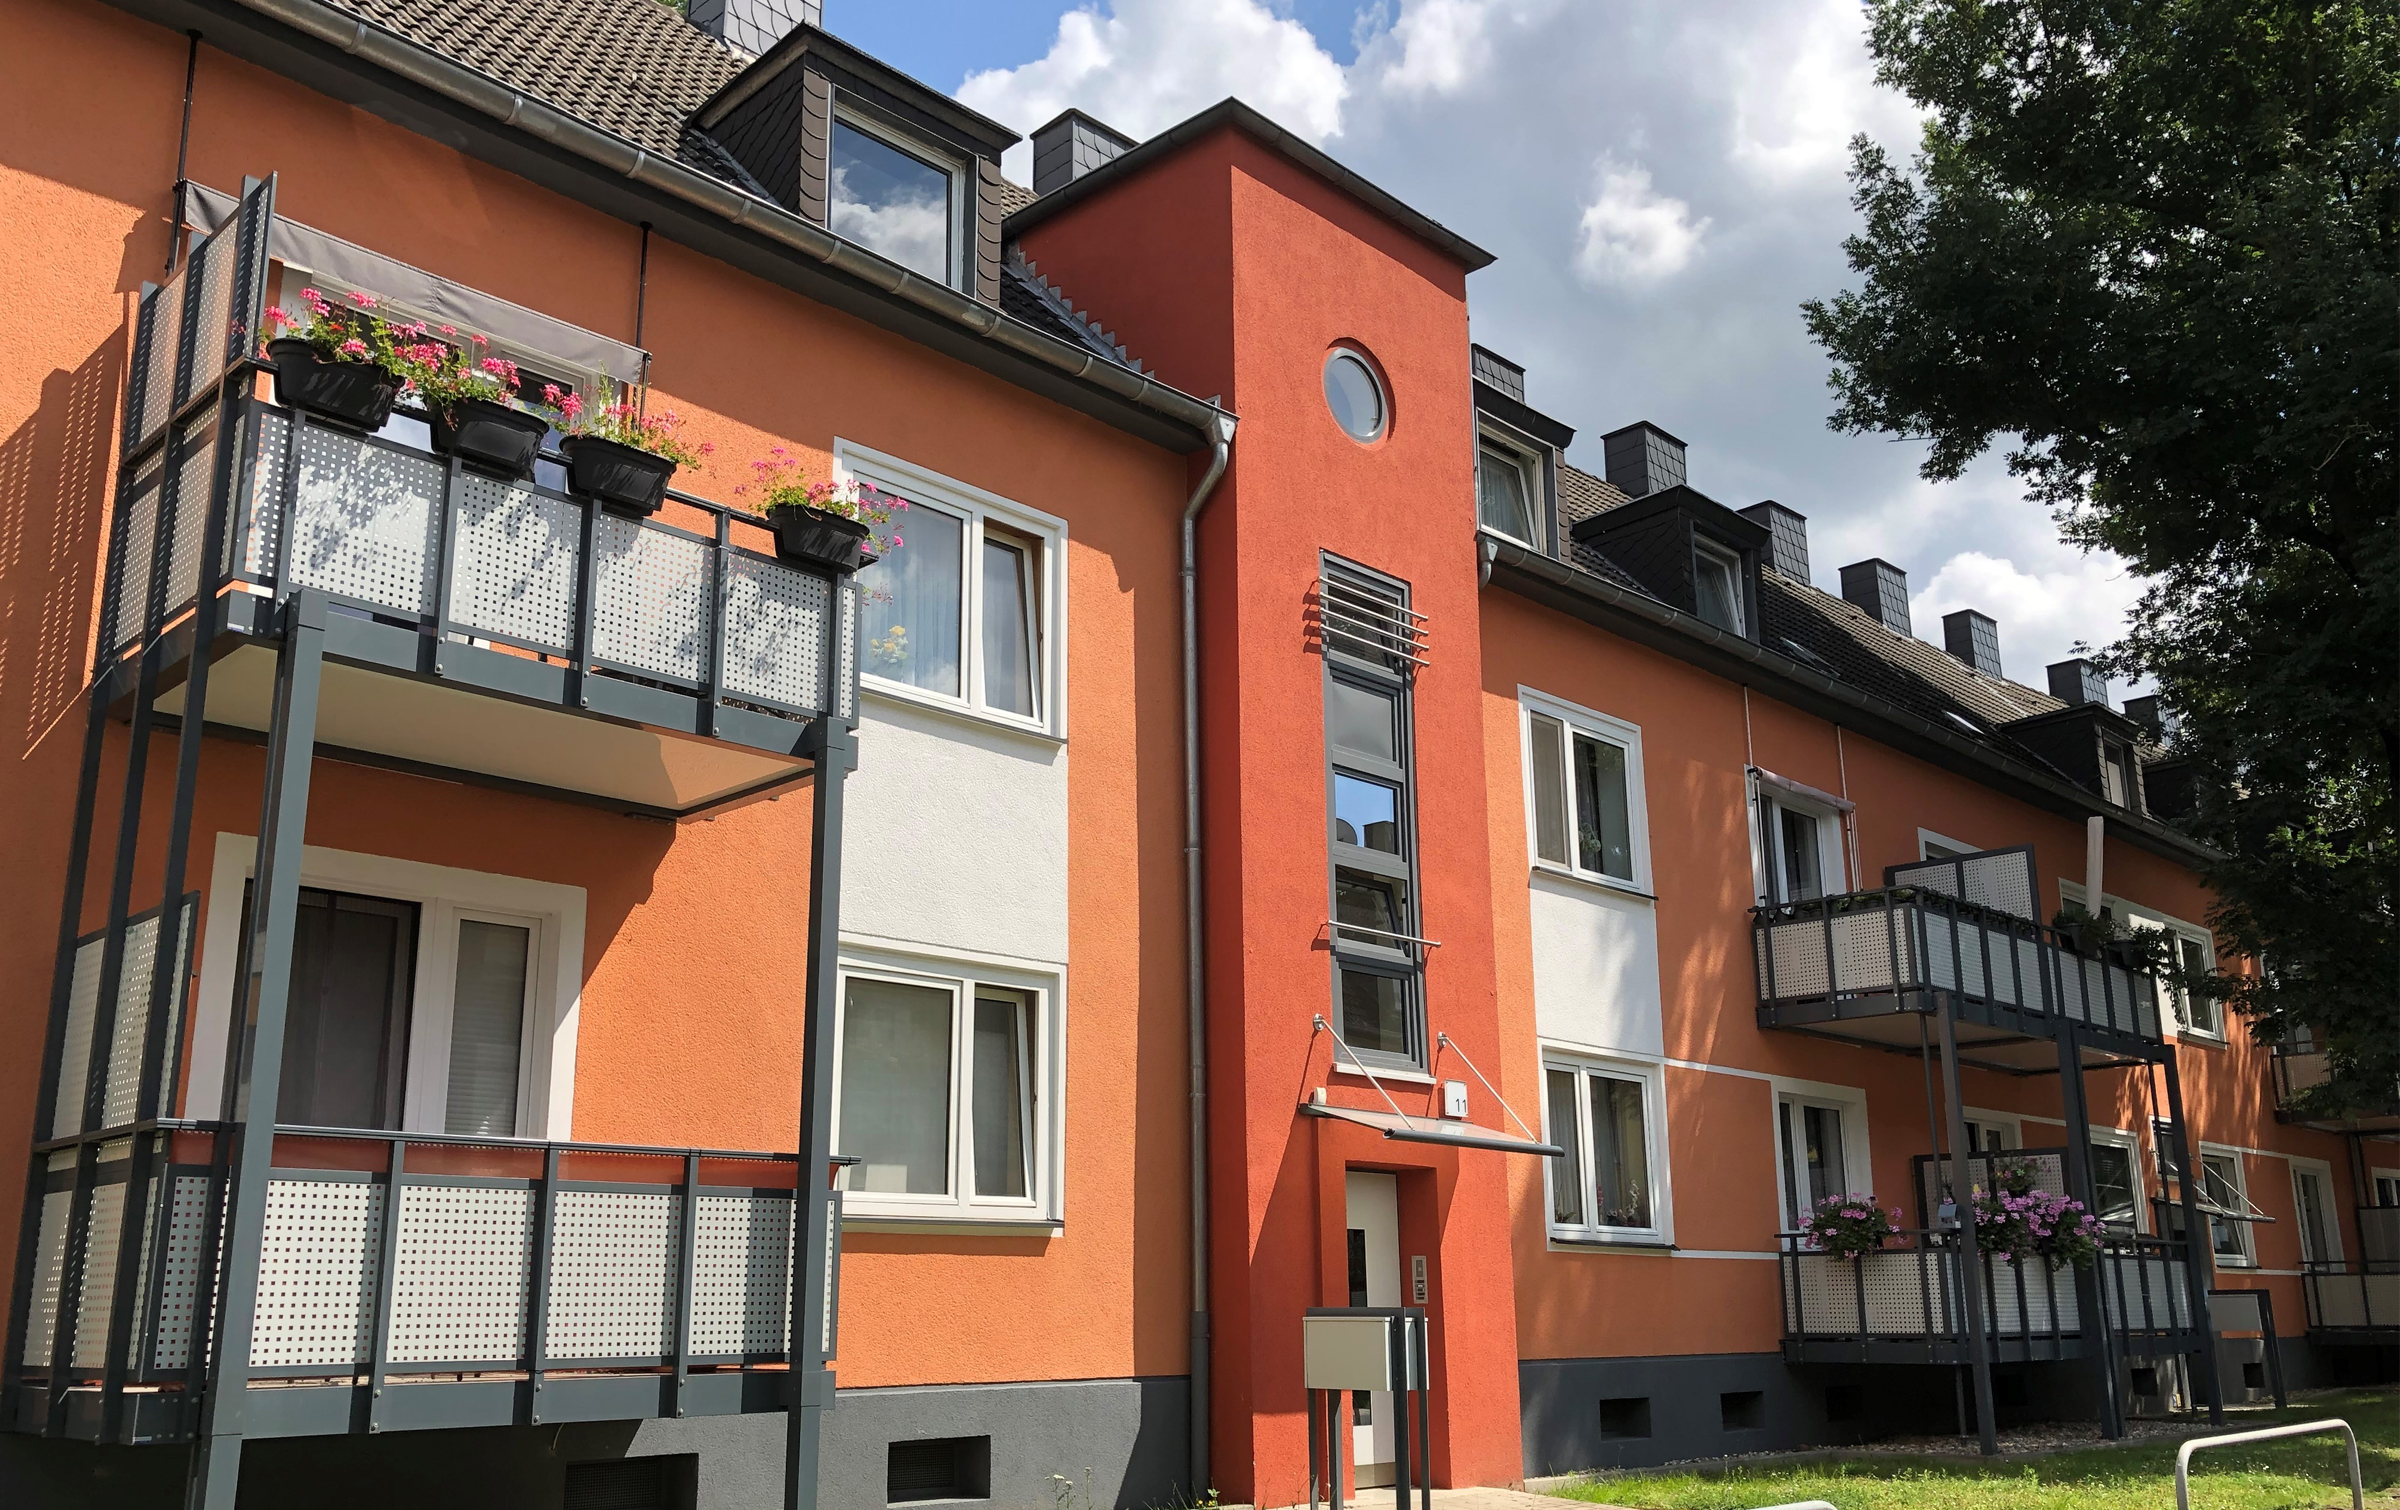 Modernes, rot gestrichenes Mehrfamilienhaus mit Balkonen.